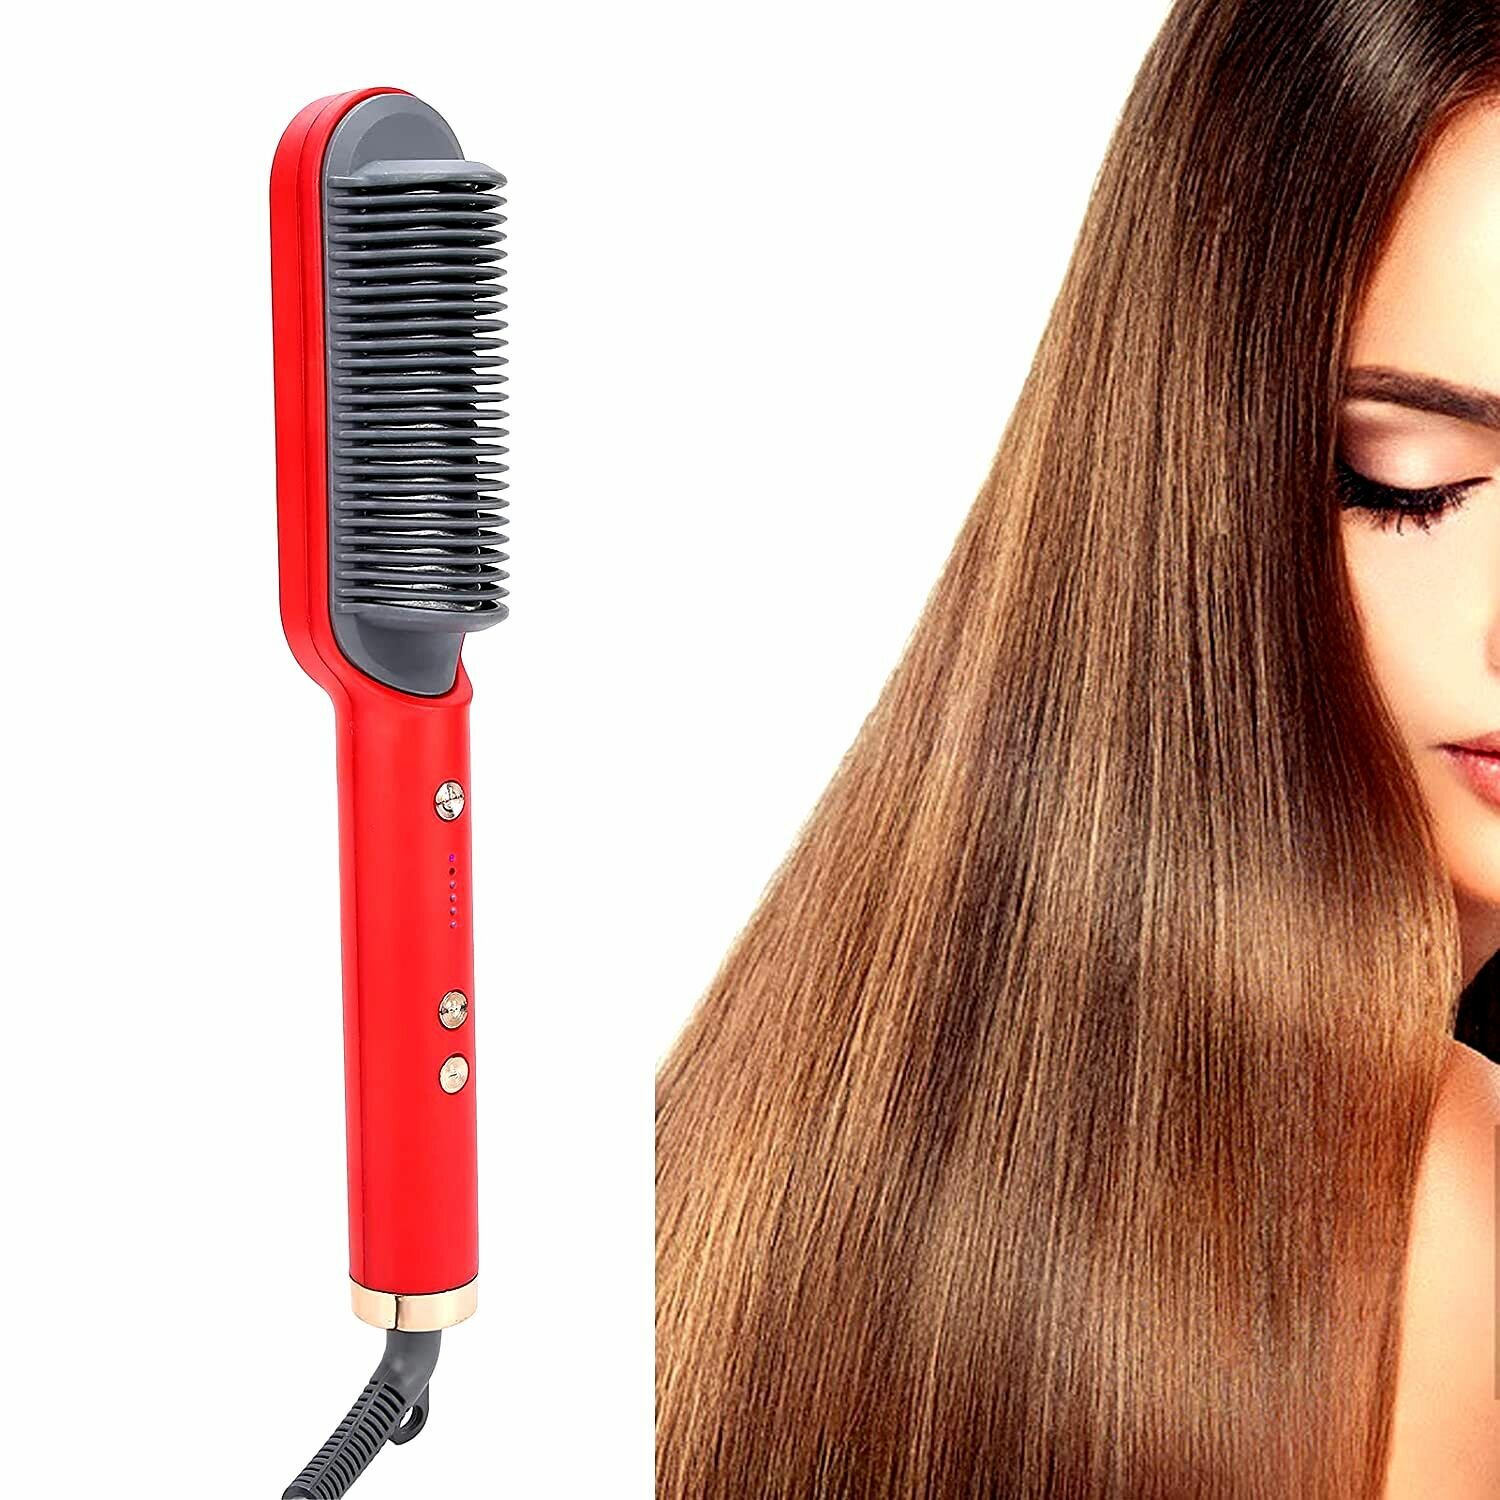 Расческа - выпрямитель для волос Straight comb FH909/ Электрическая расческа для выпрямления волос 5 температурных режимов